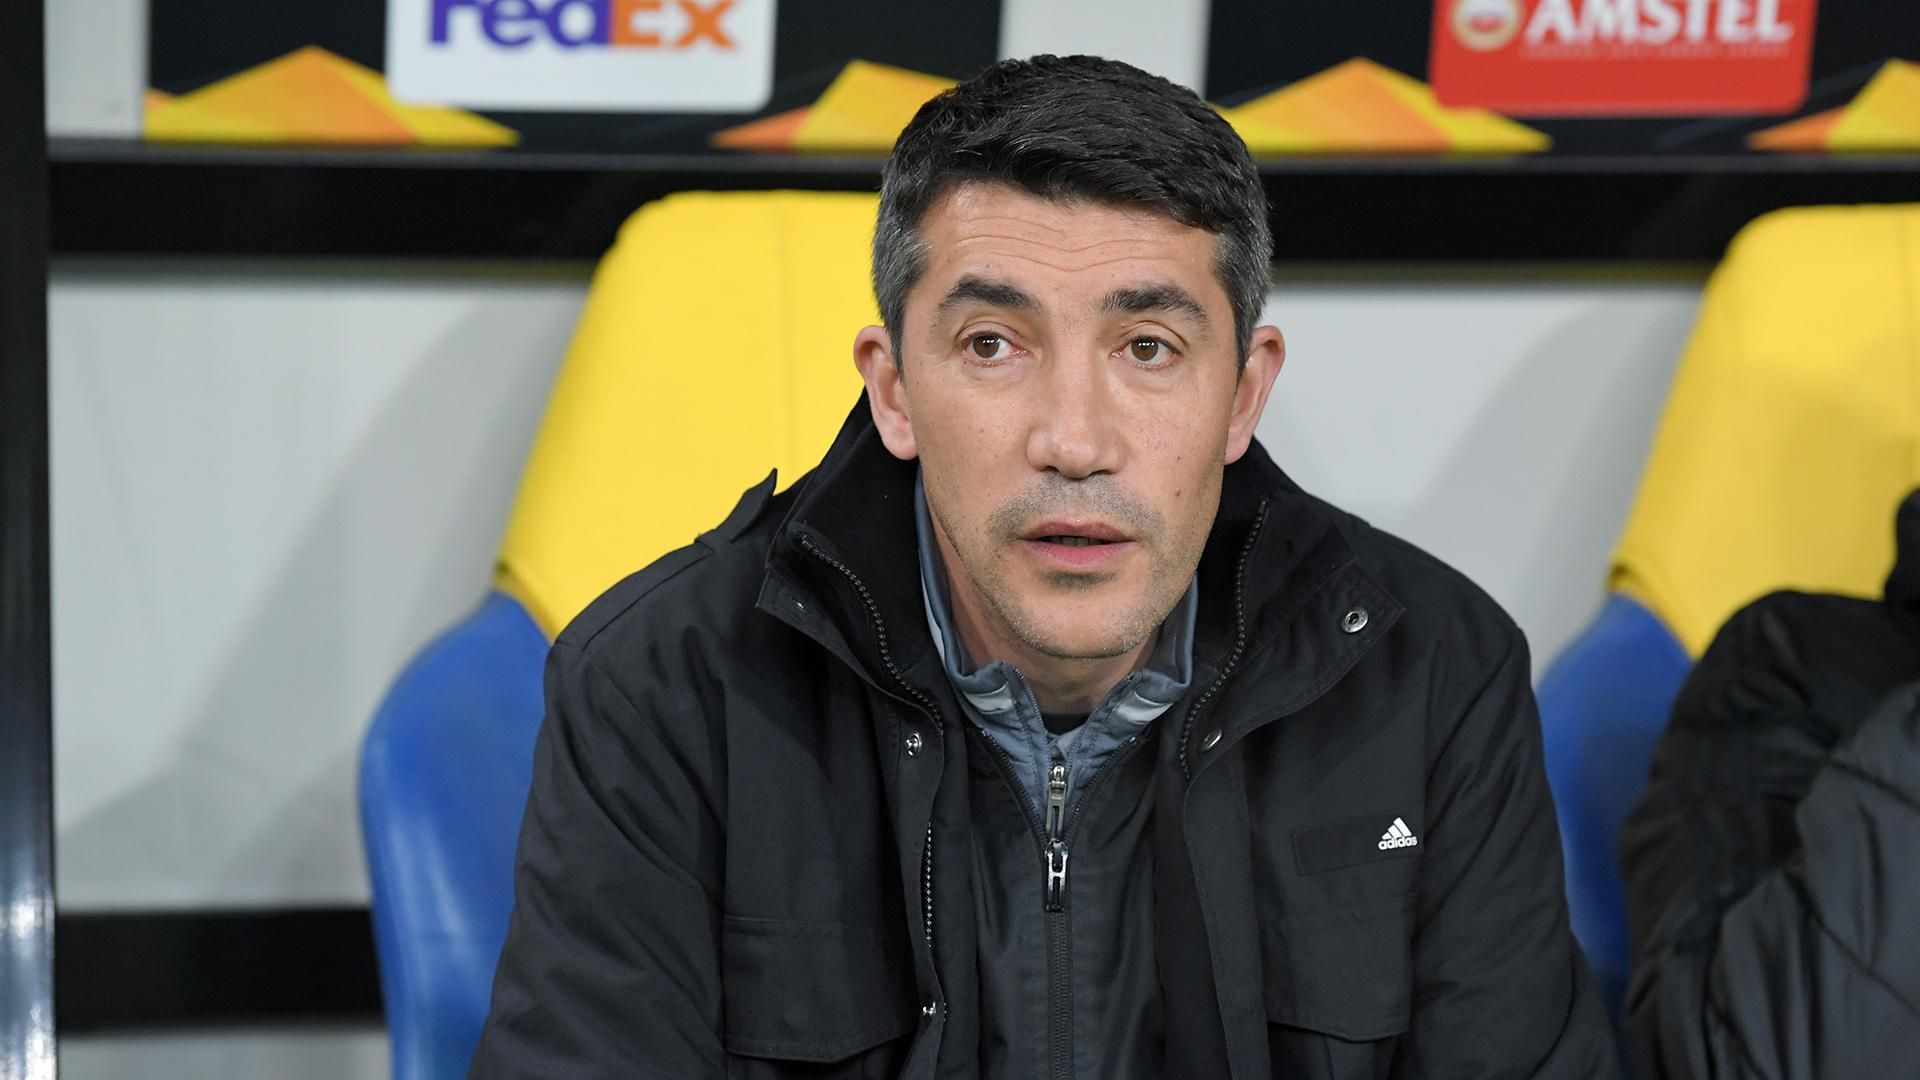 УЕФА оштрафовала тренера "Бенфики" после матча против "Шахтера" в Лиге Европы